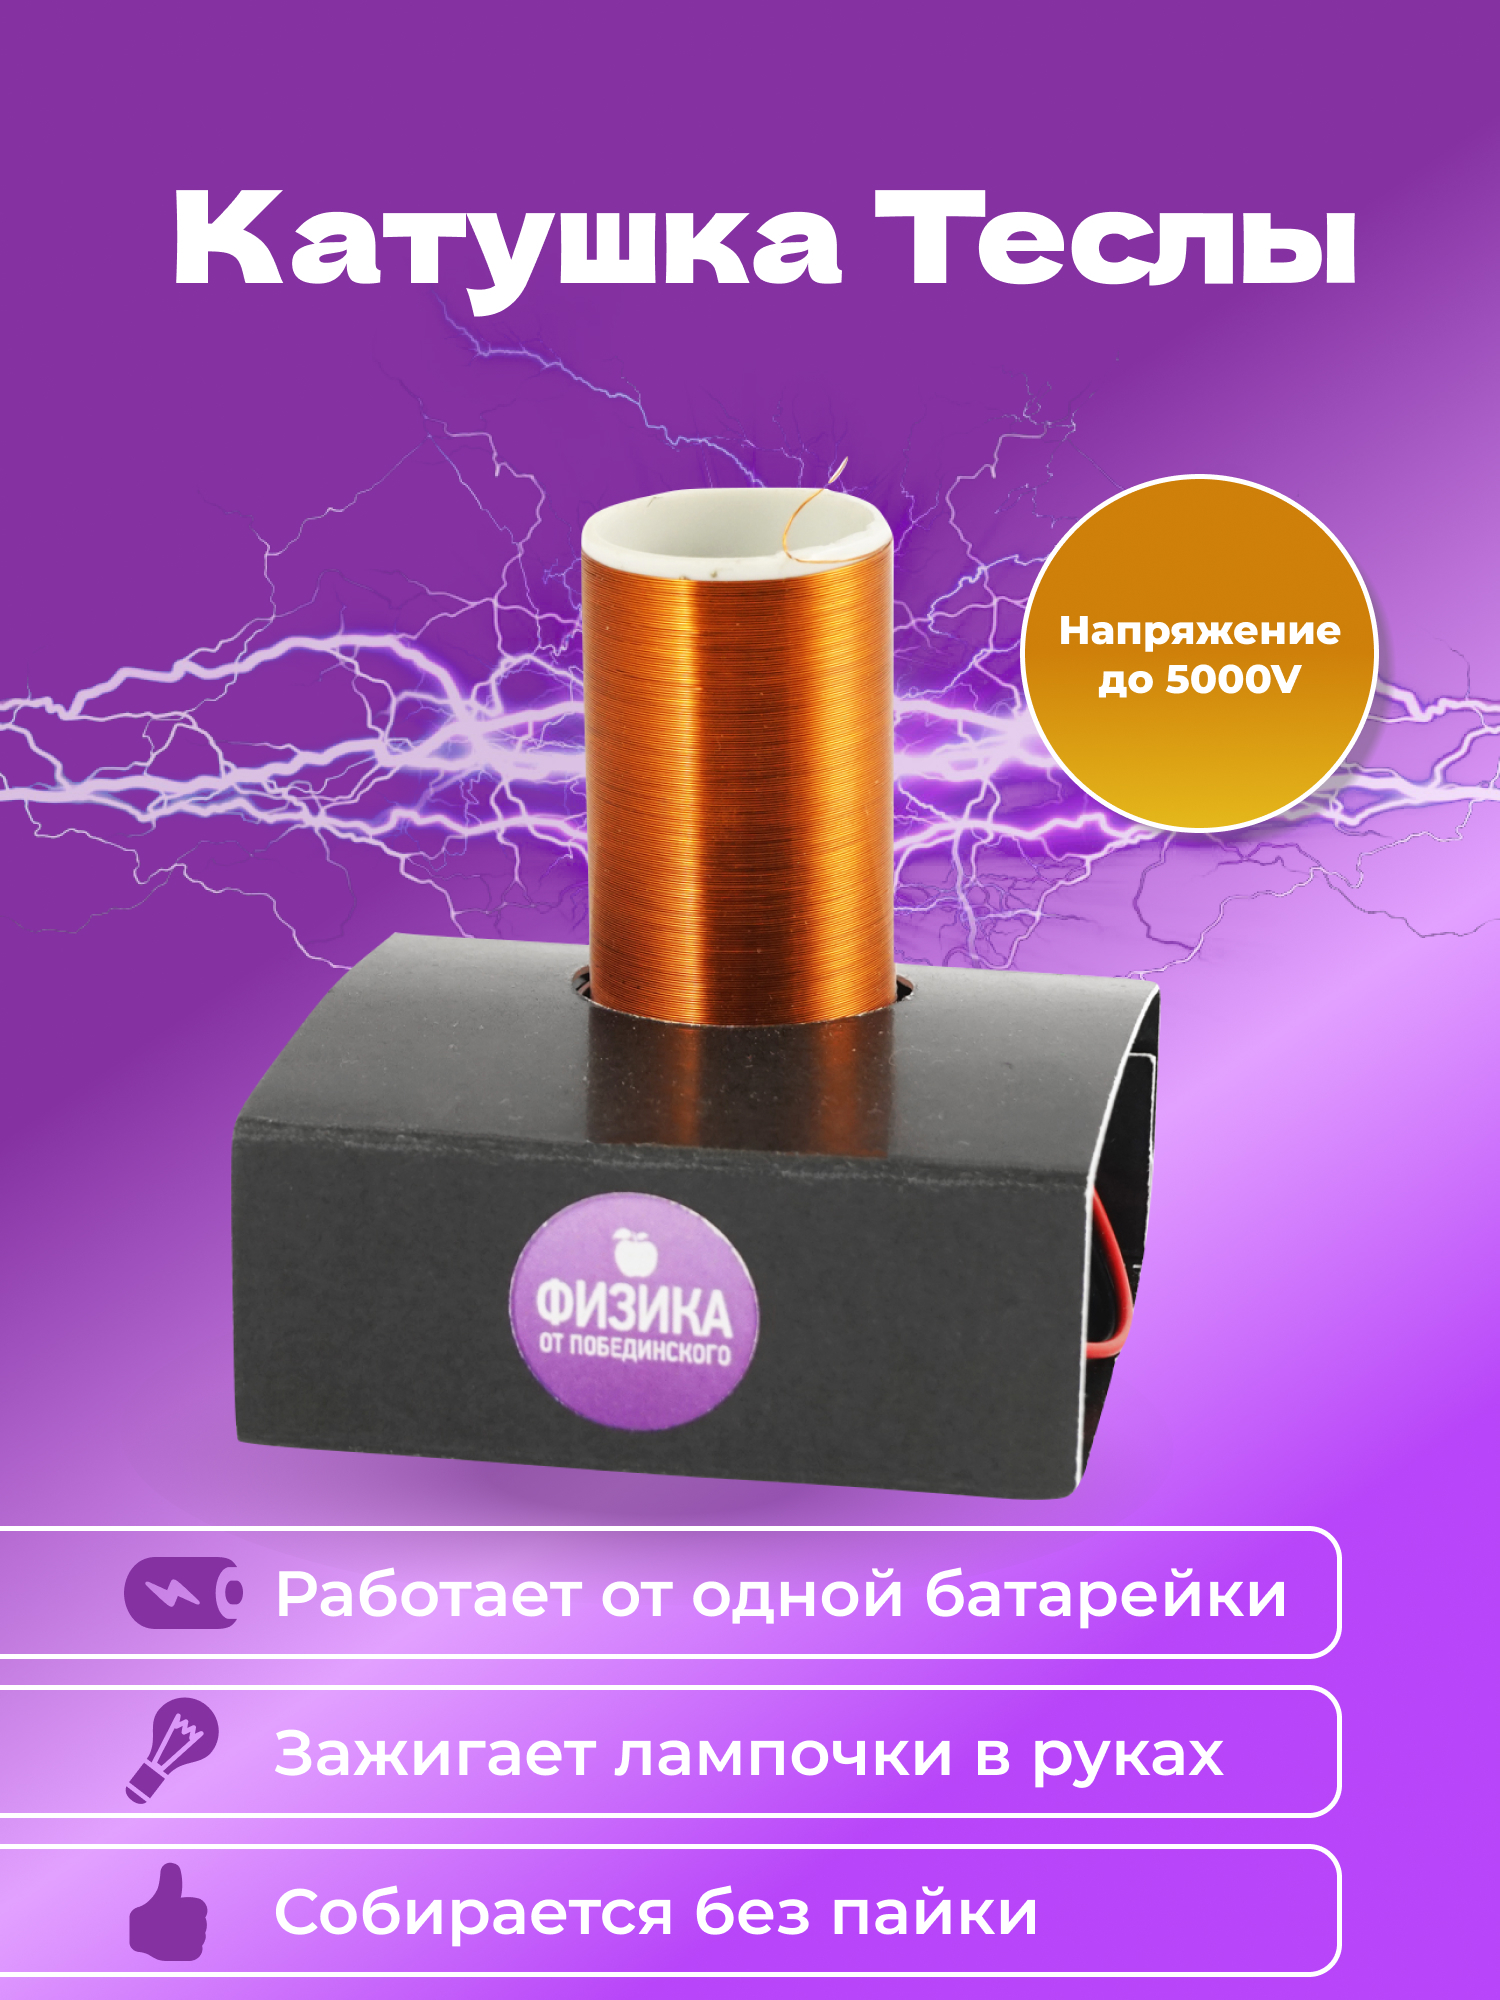 Easyelectronics.ru